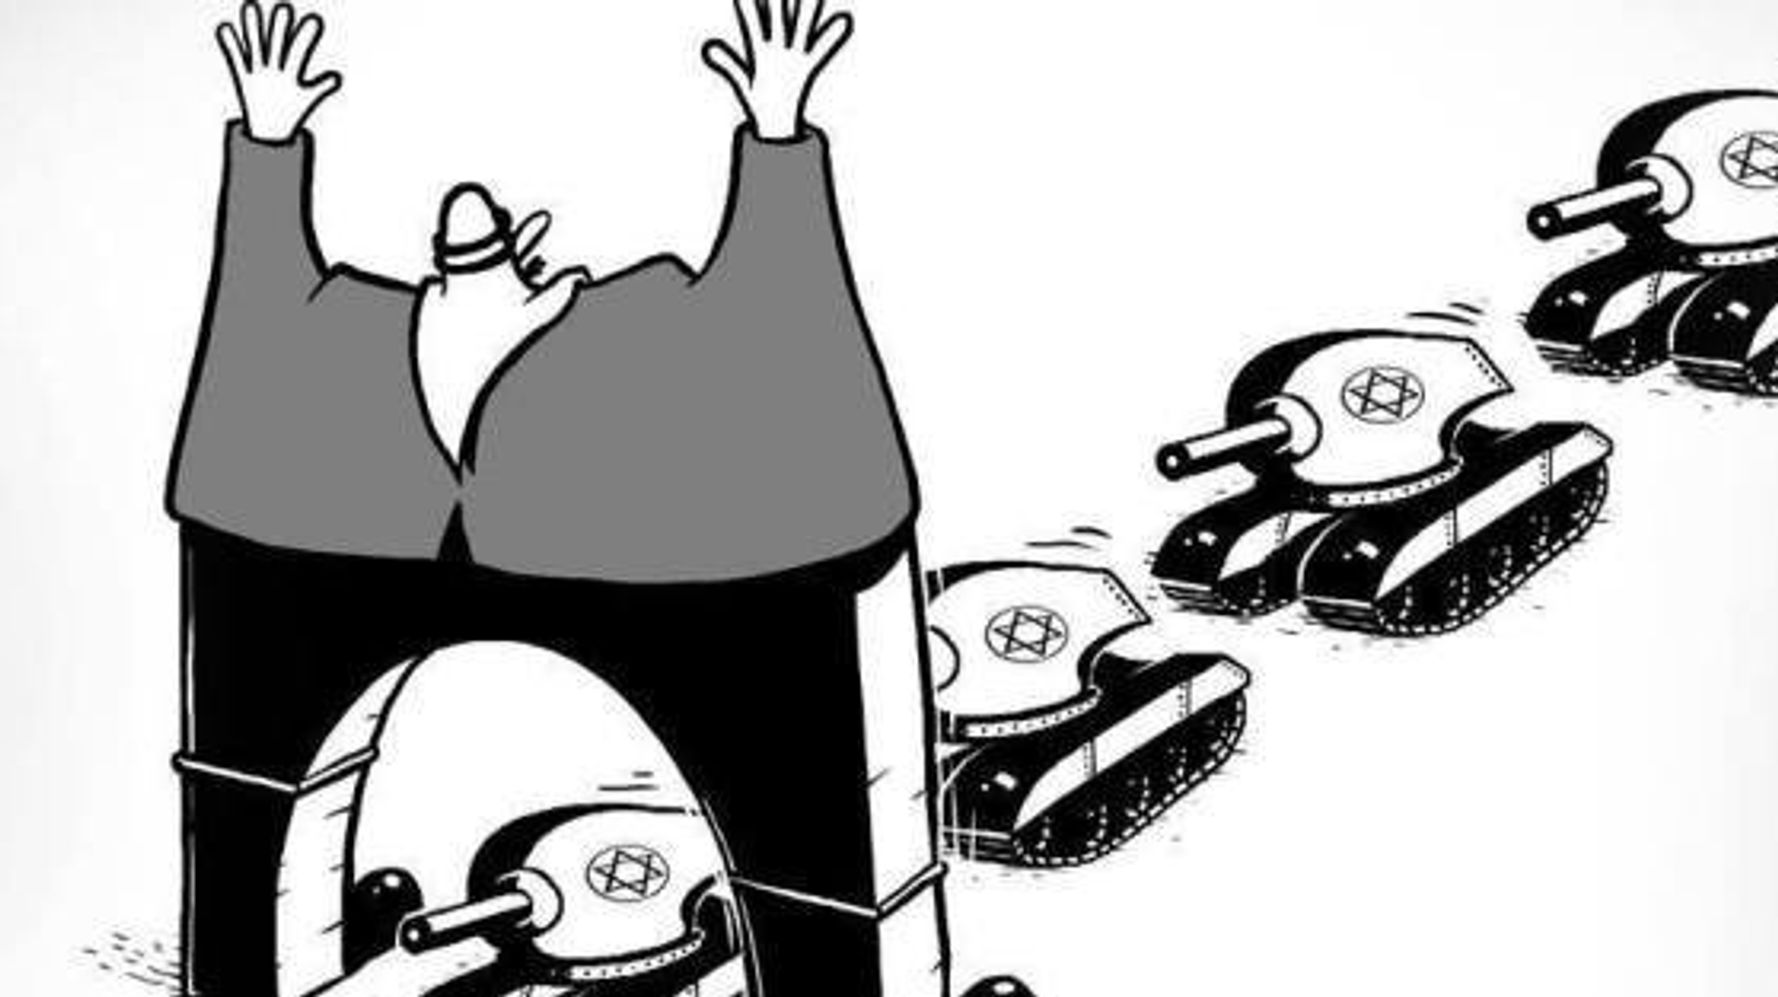 アラブの漫画家が見たガザ 狂気の中のユーモア【風刺画・画像集